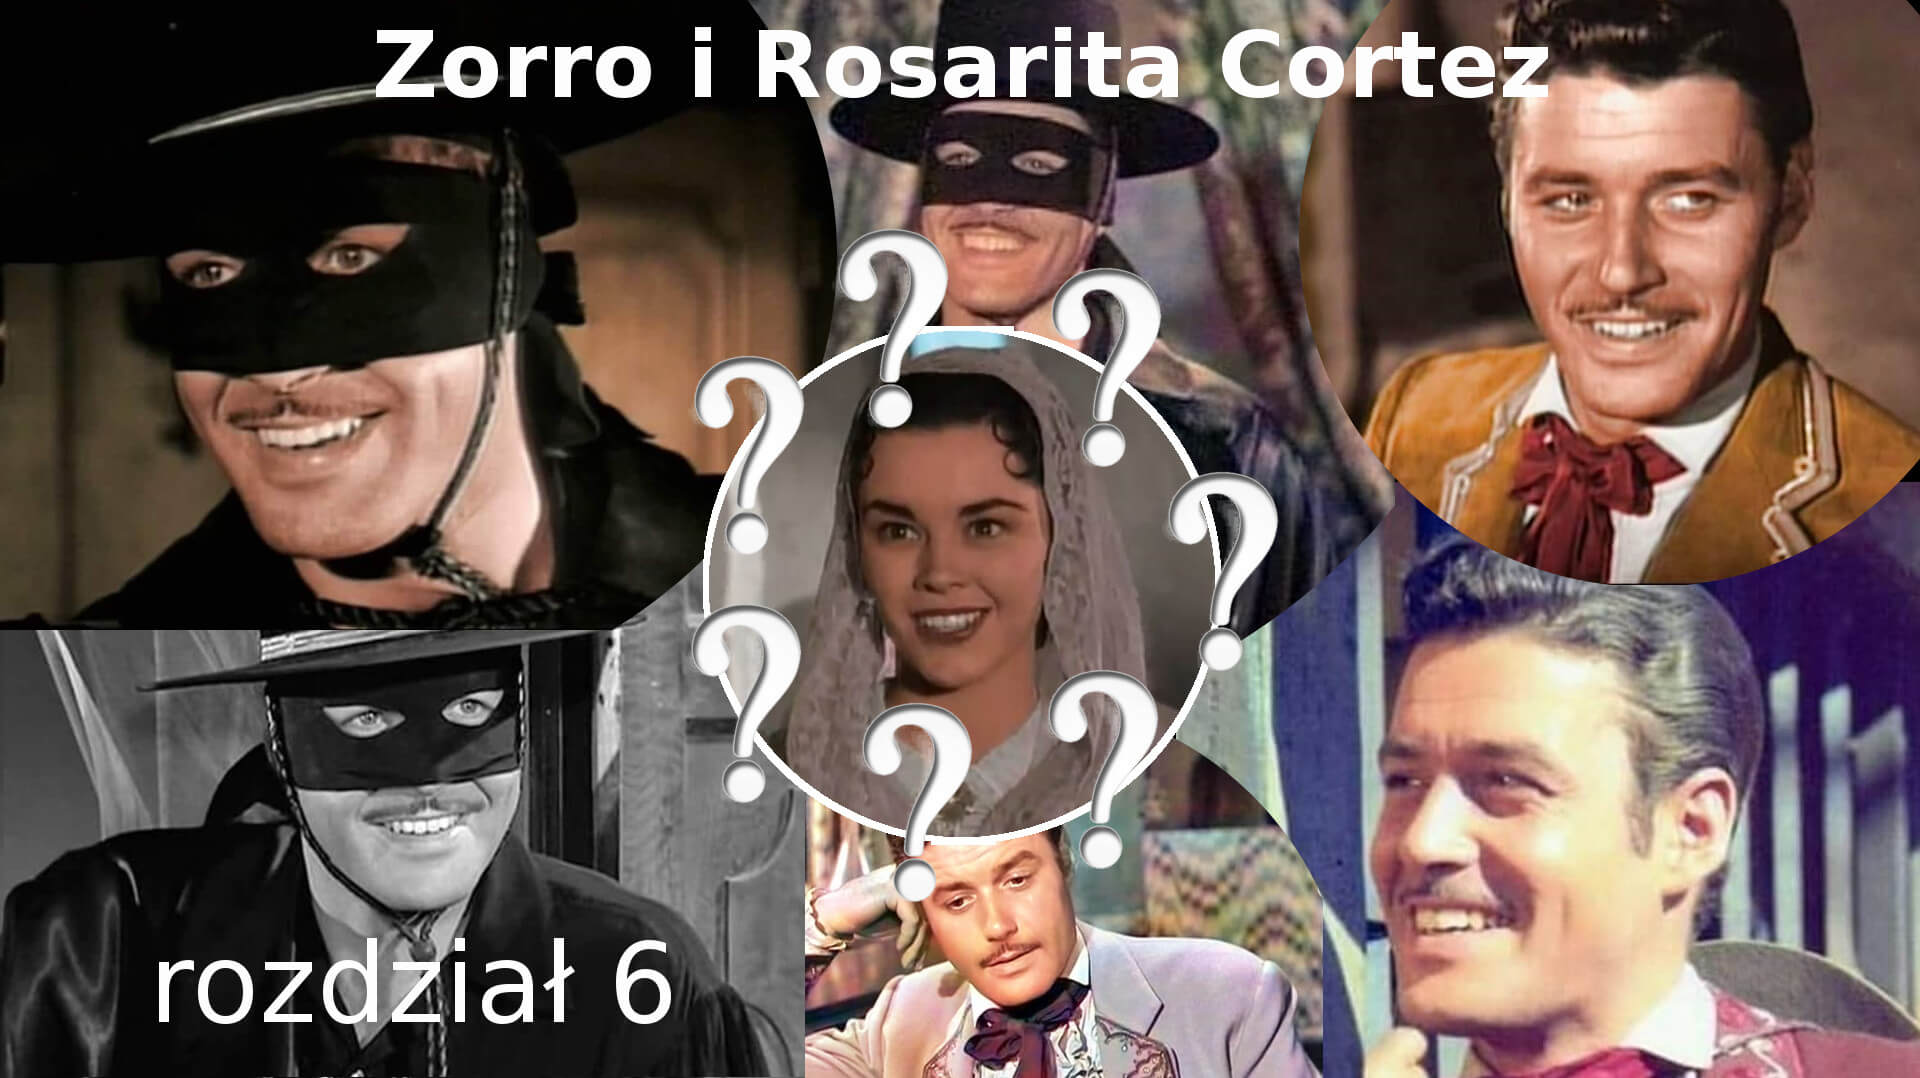 Zorro i Rosarita Cortez rozdział 6 Zorro fanfiction